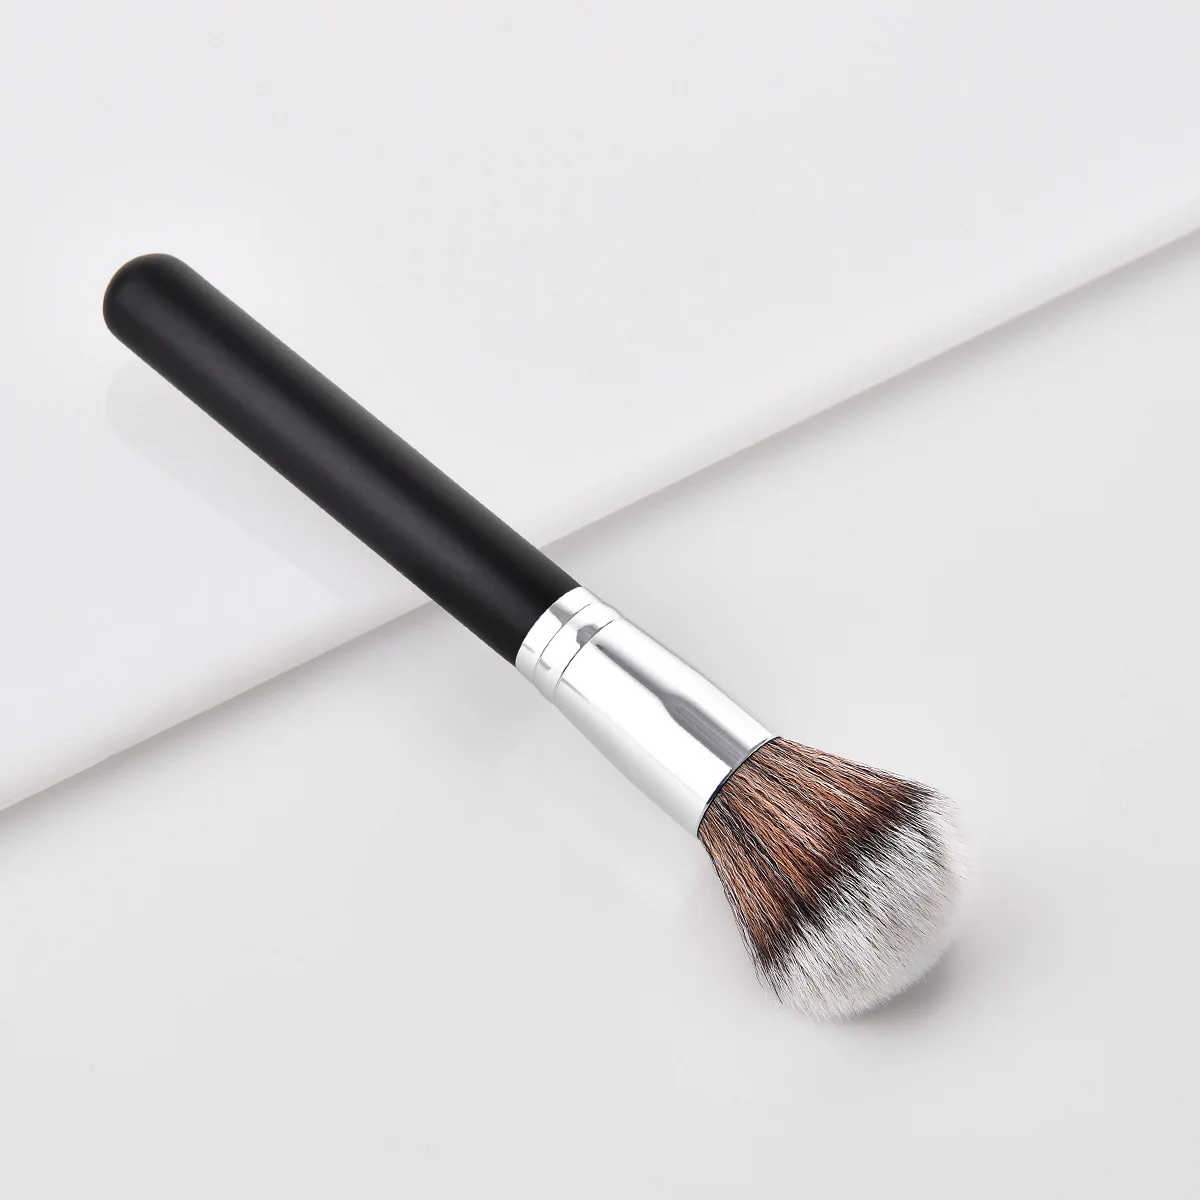 Новые профессиональные кисти для макияжа Набор 1 шт. высокое качество деревянная ручка Pincel консилер «maquiagem» тени для век щетки инструменты для макияжа